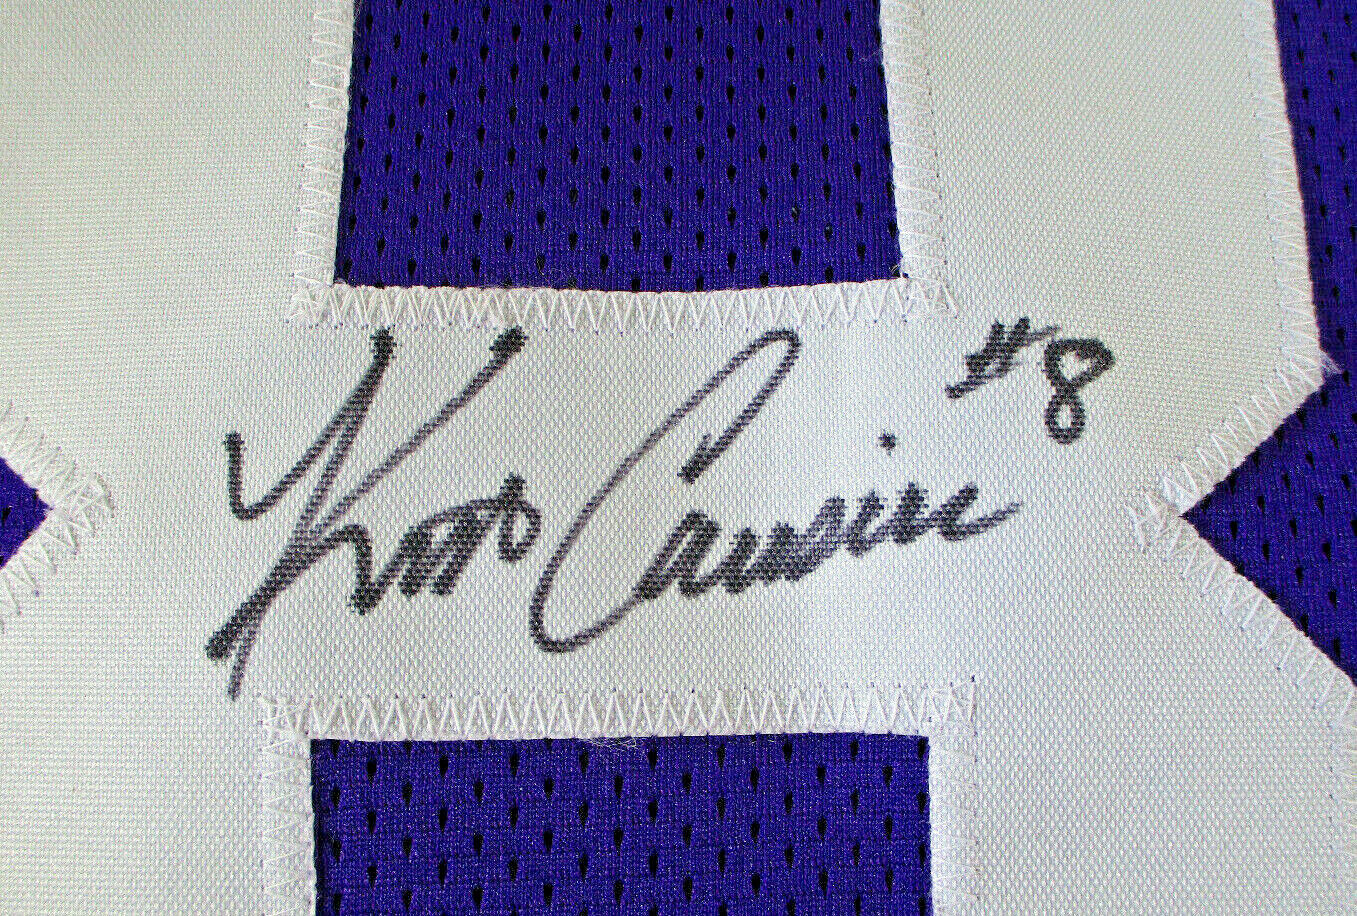 Kirk Cousins / Autographed Minnesota Vikings Purple Custom Football Jersey / COA